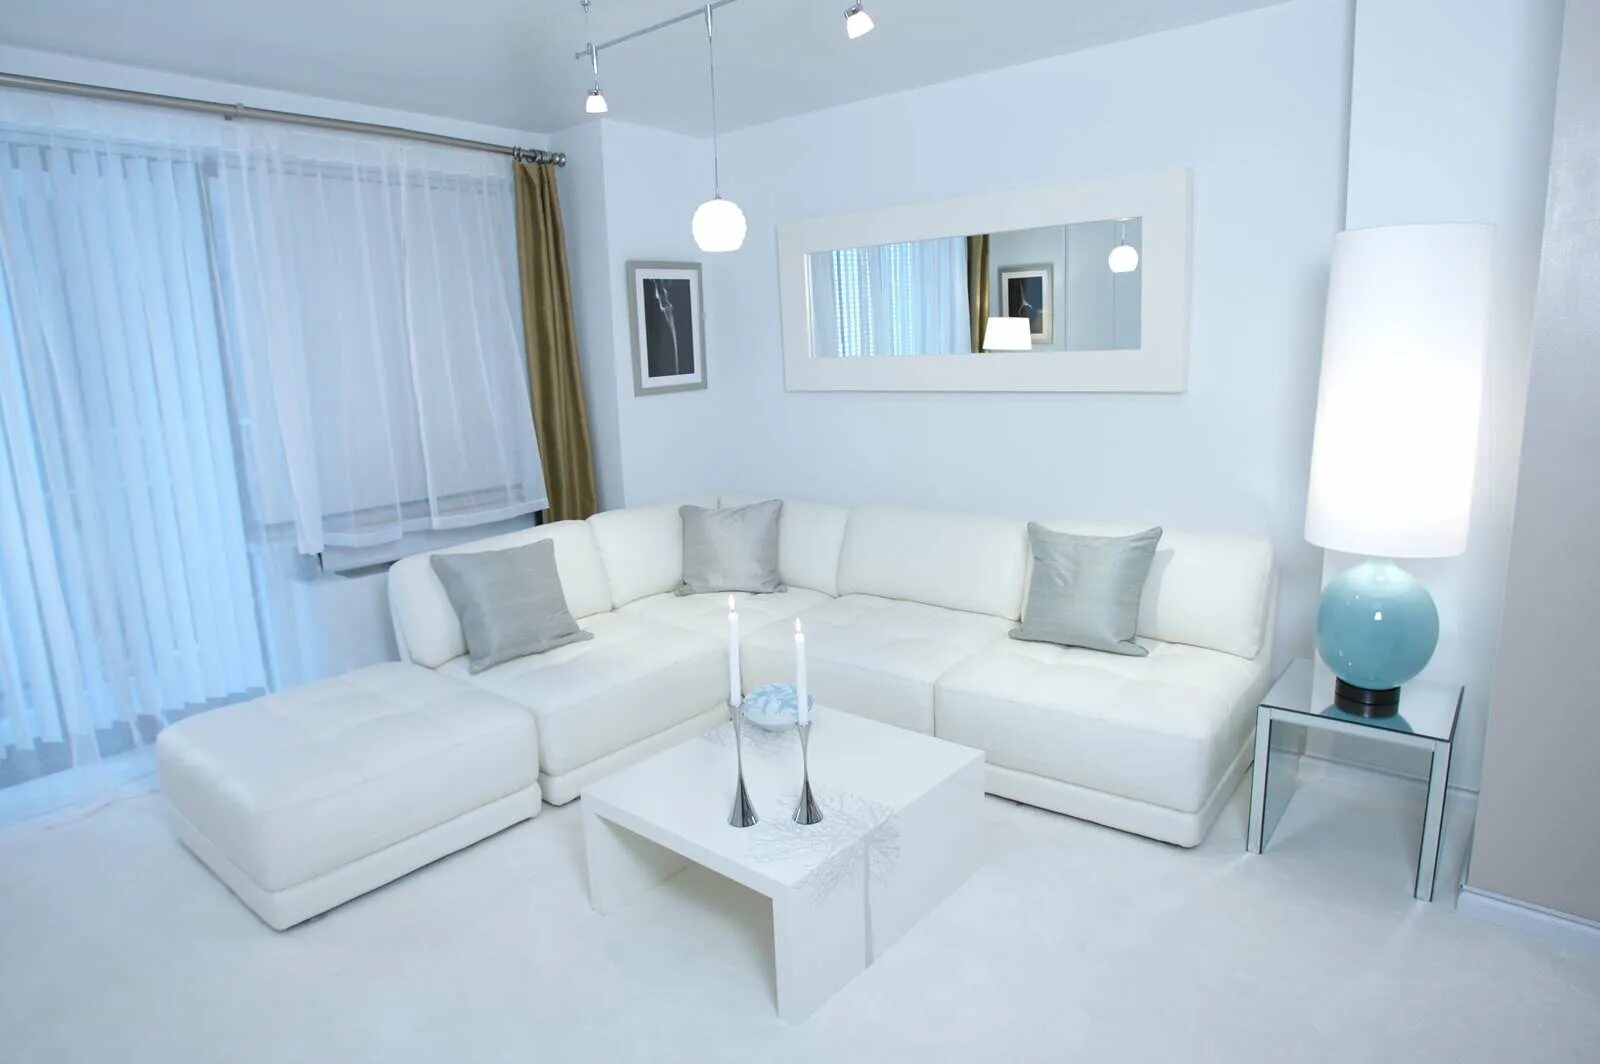 Дизайн интерьера белый. Гостиная в белом цвете. Белый диван в интерьере гостиной. Белый цвет в интерьере квартиры. Интерьер гостиной в белом цвете.